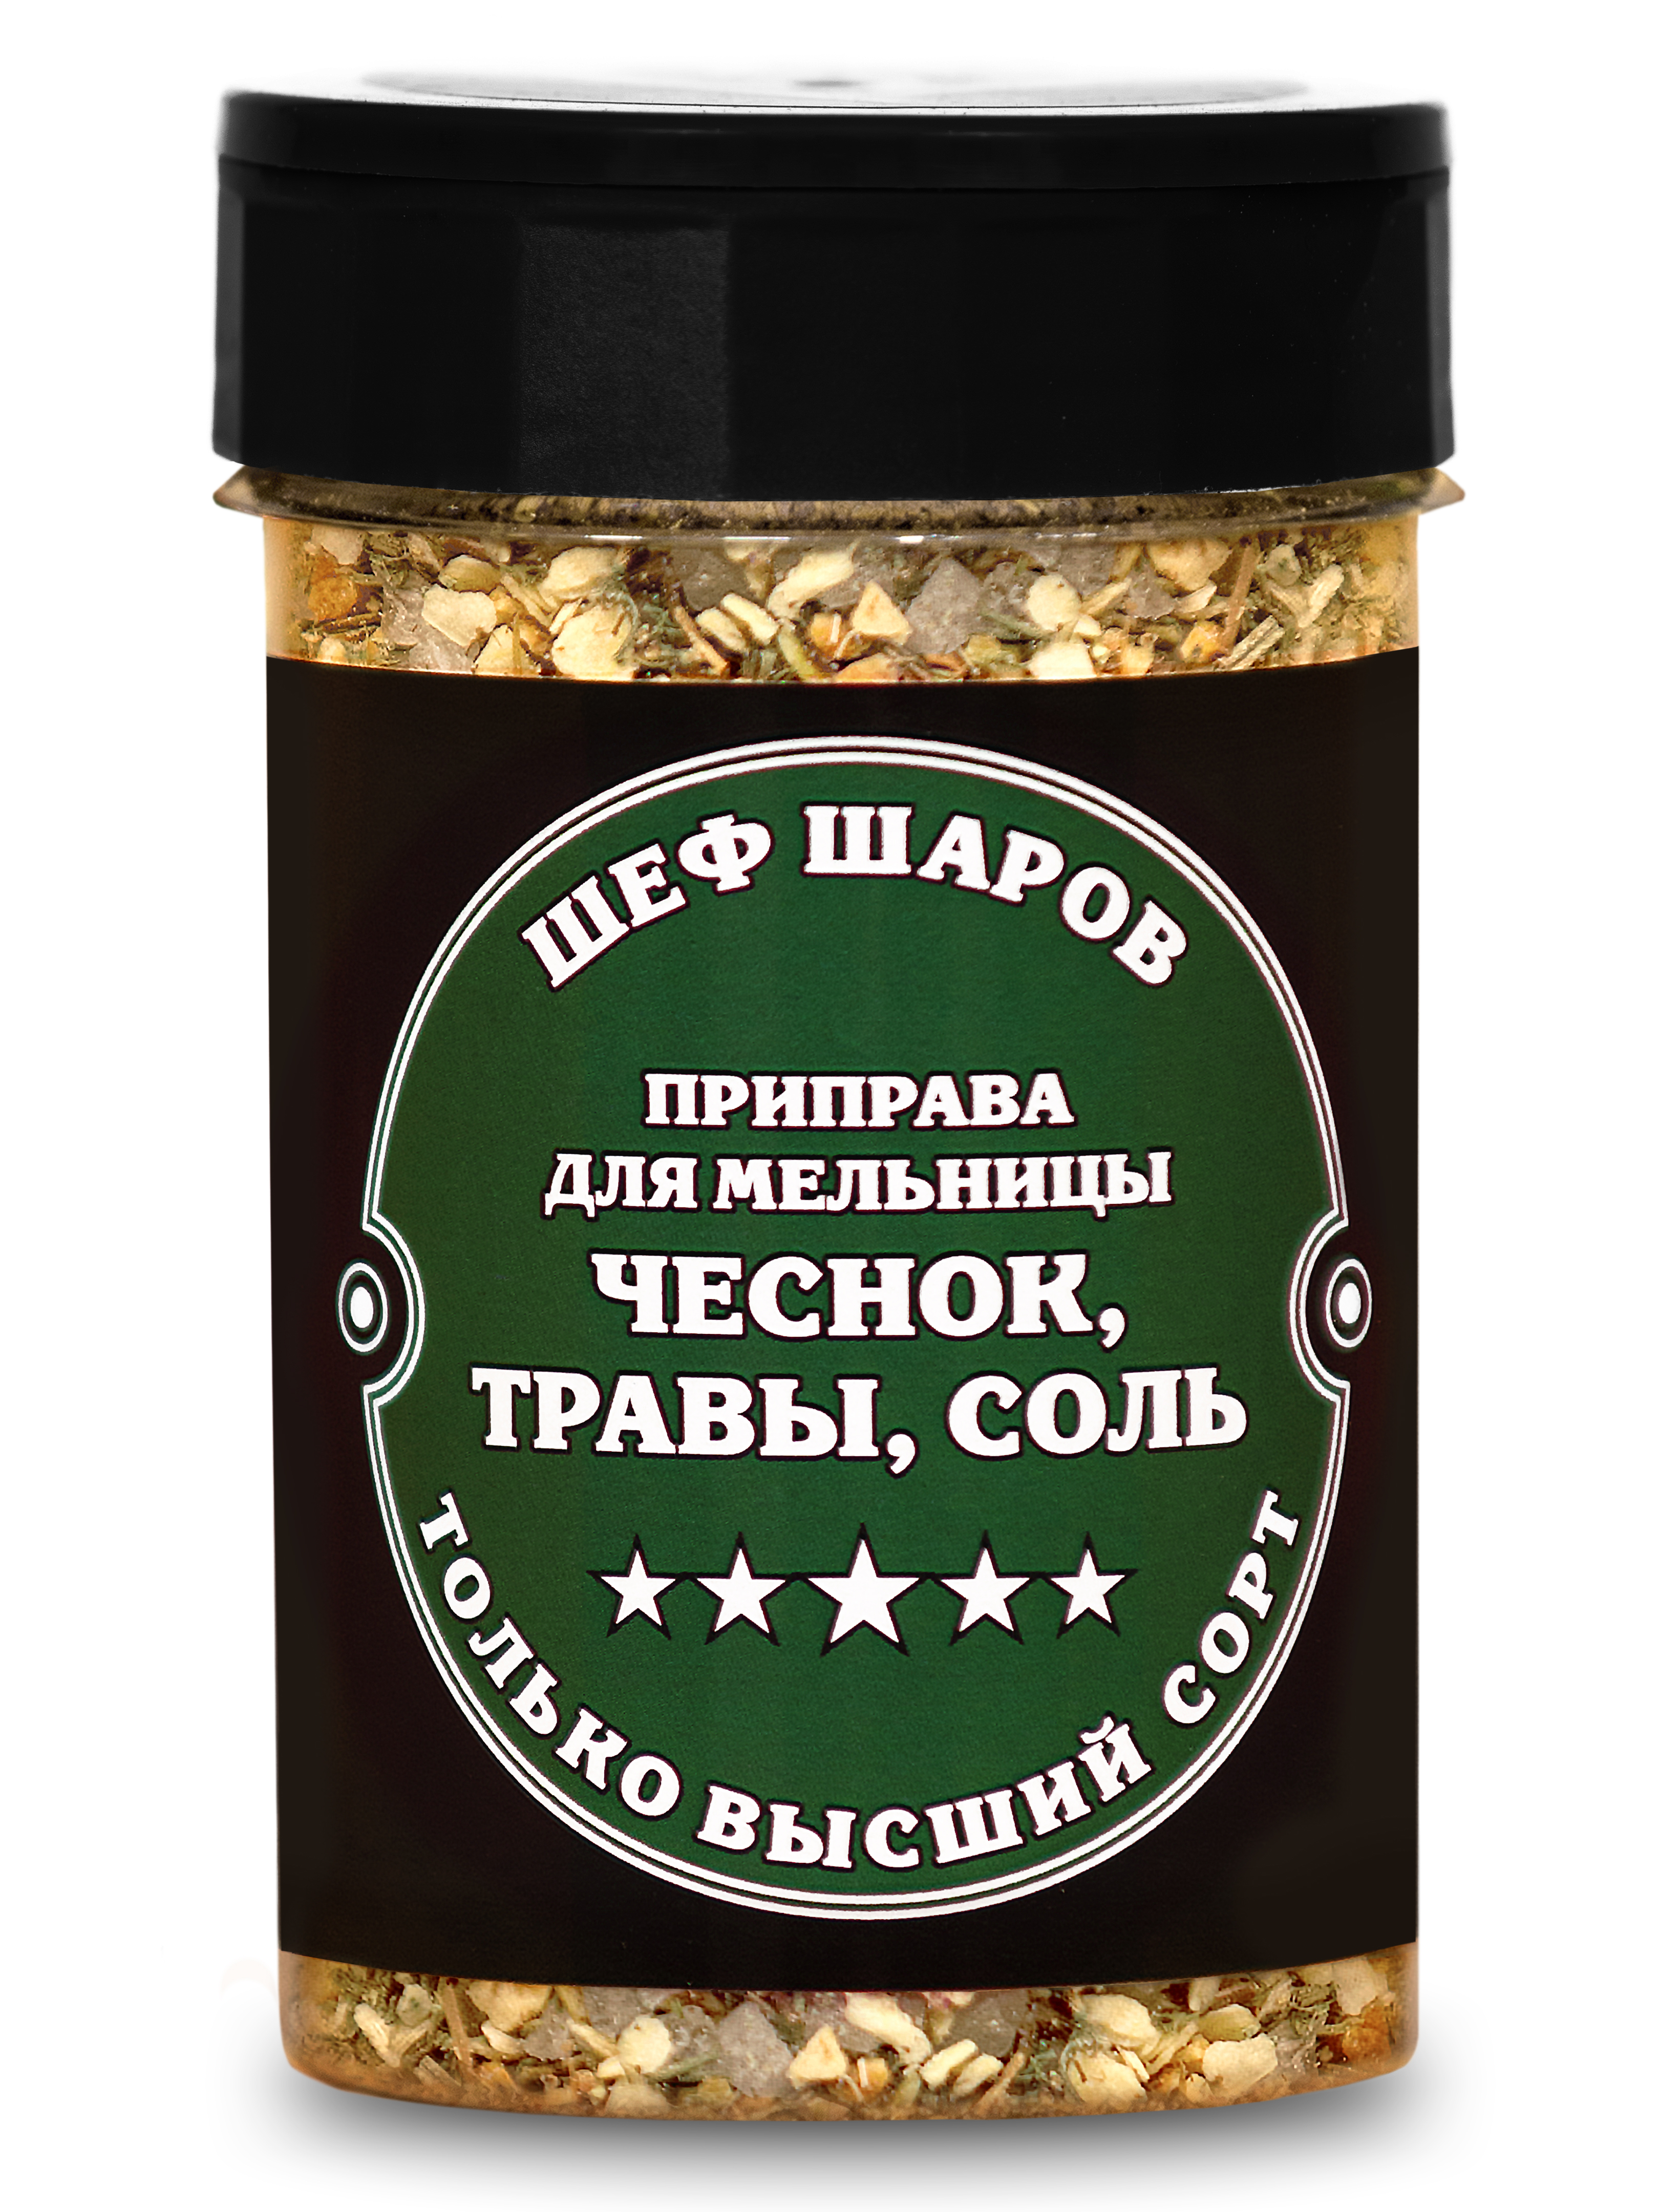 Приправа для мельницы ШЕФ ШАРОВ Чеснок, травы, соль, 115 г